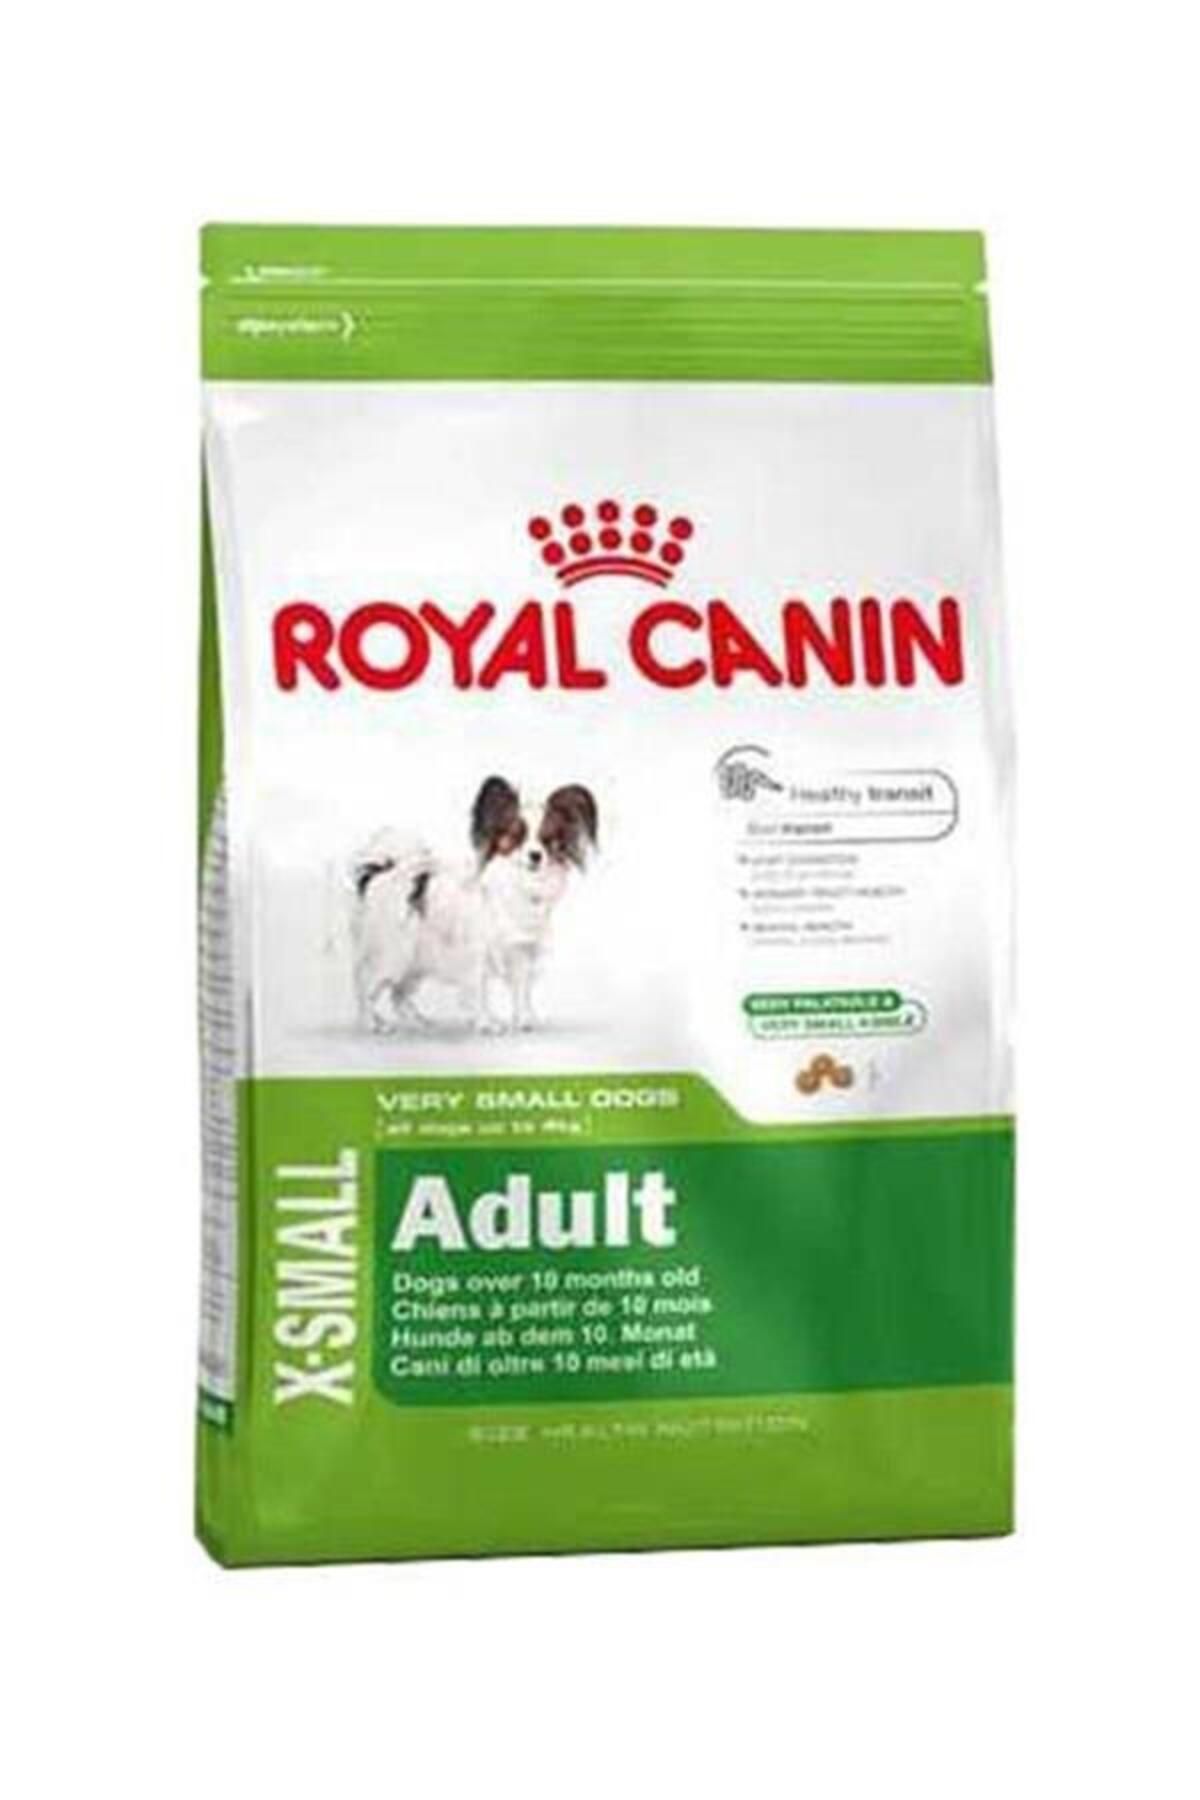 Royal Canin Dog Shn Xsmall Adult Köpek Maması 1,5 Kg